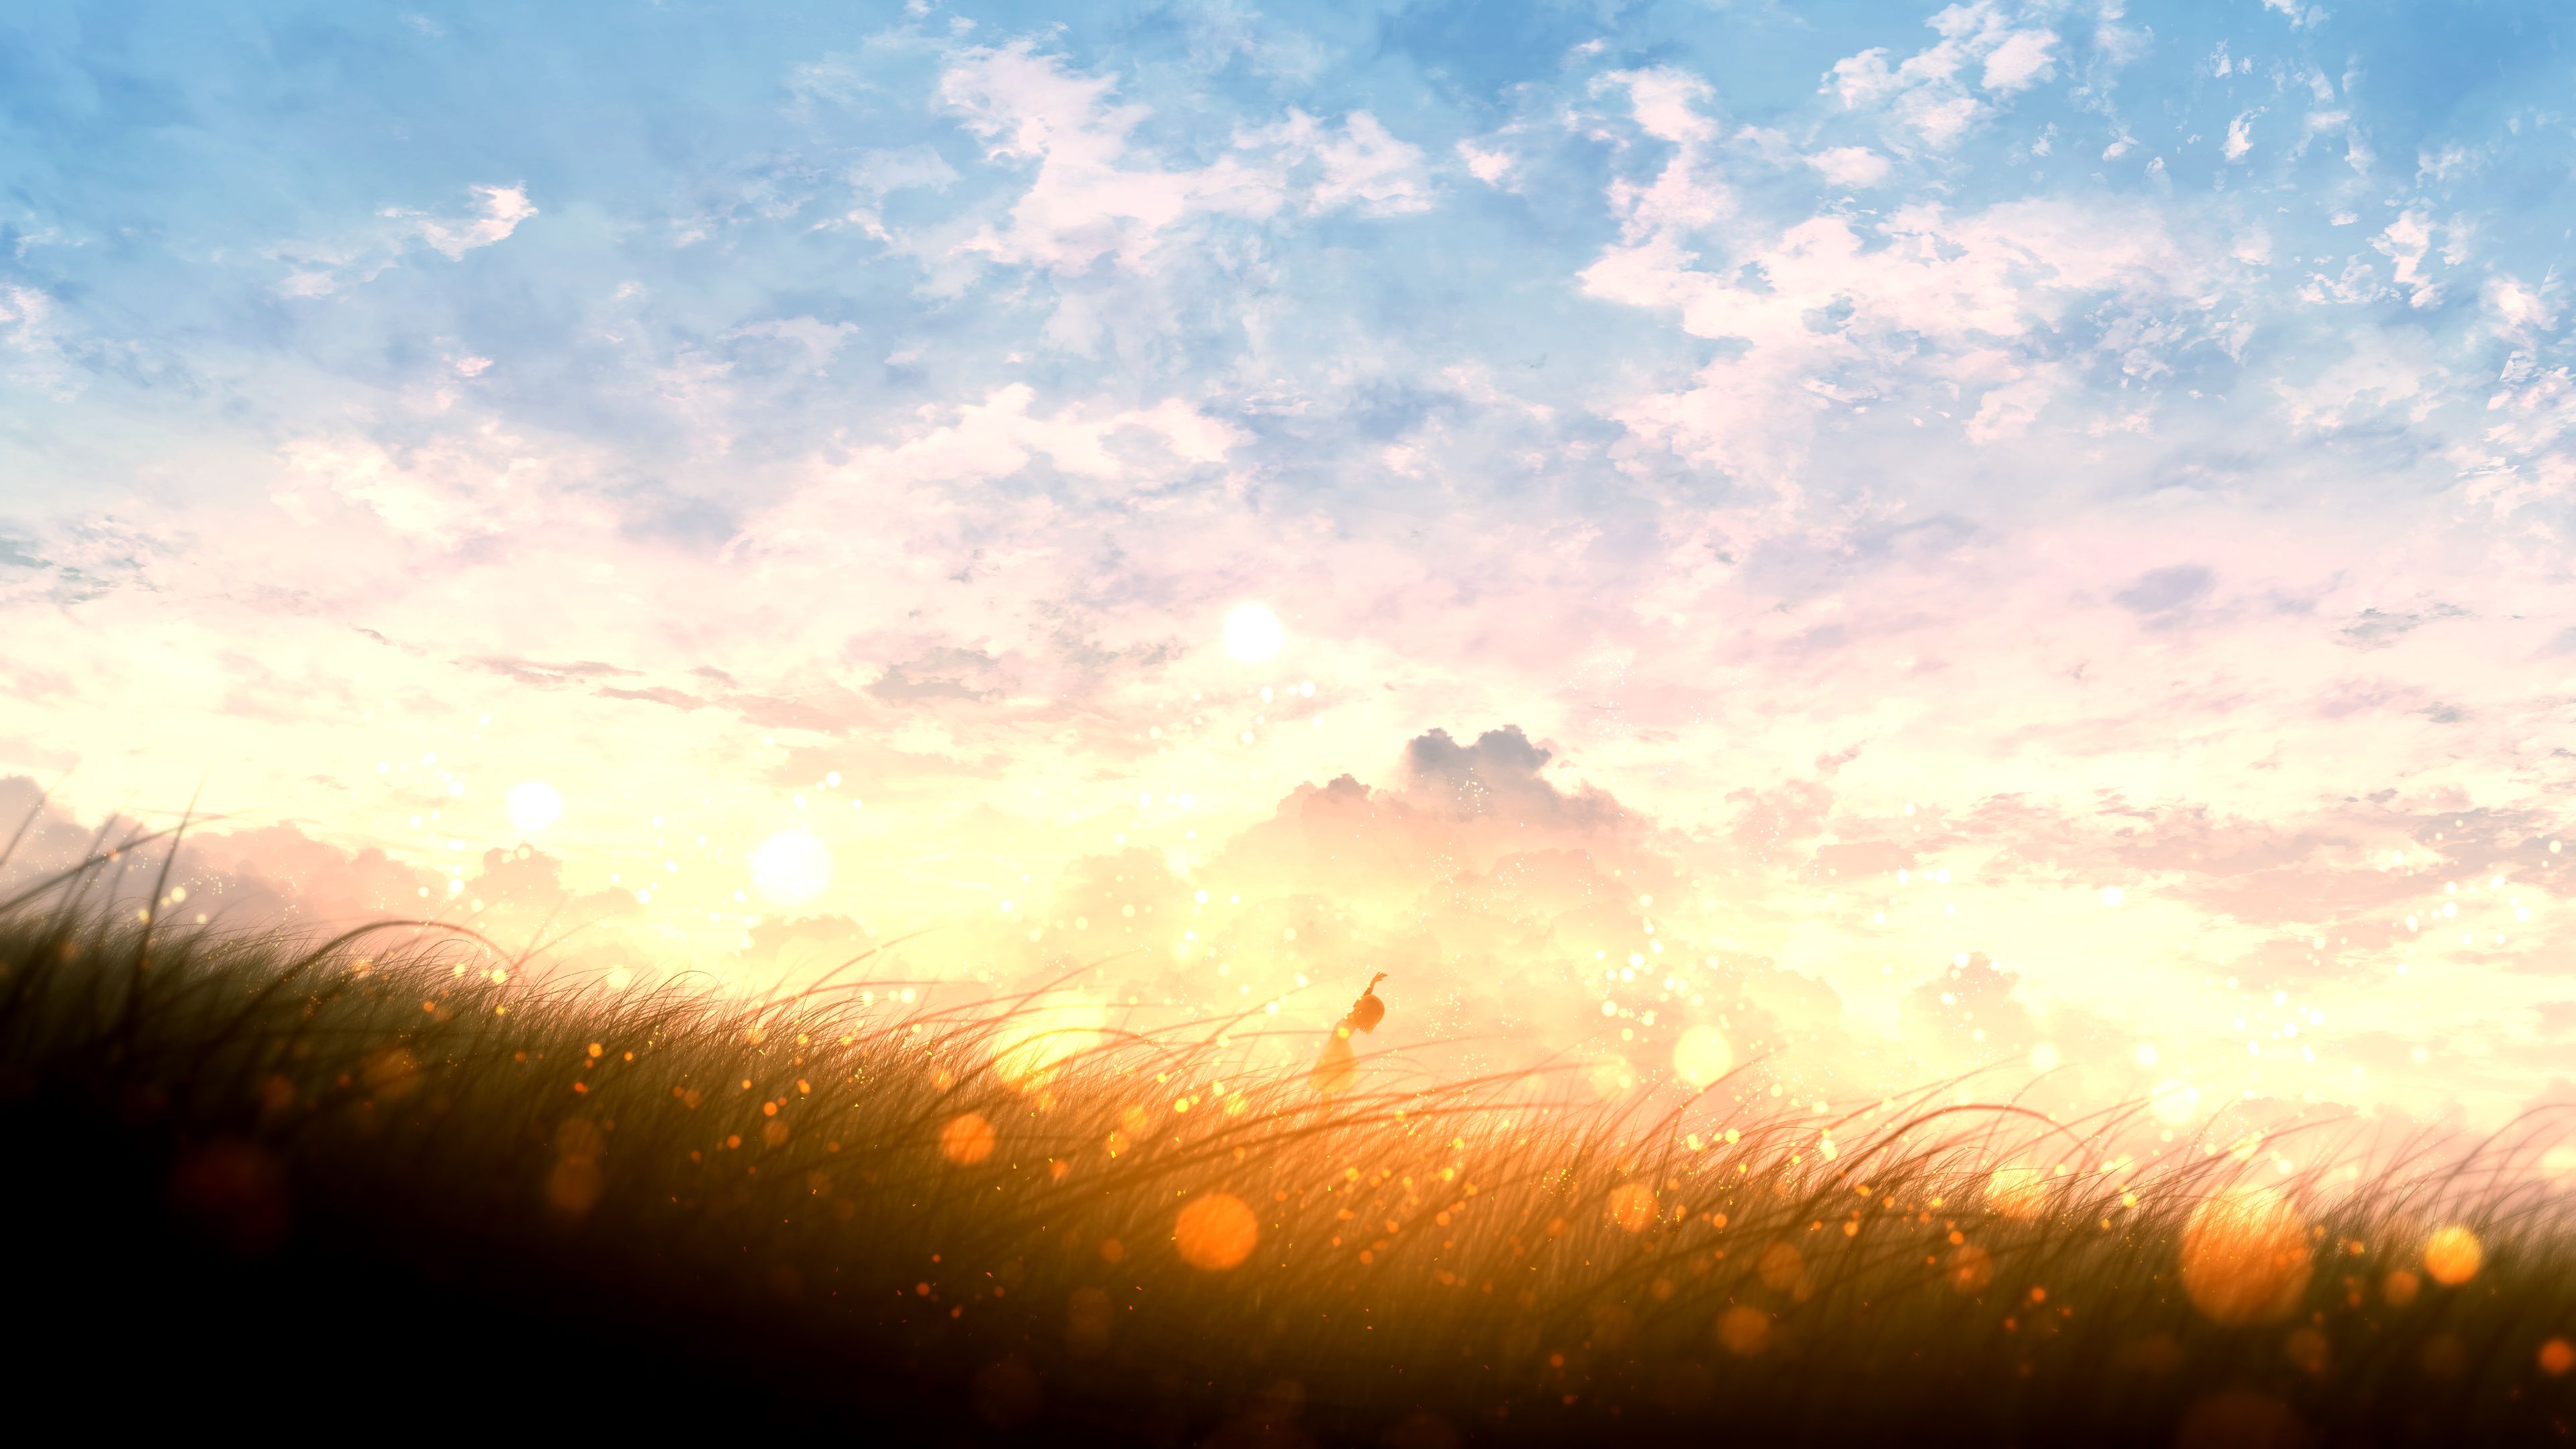 Cloud Field Girl Original Anime Sky Sunset Wallpaper:3840x2160